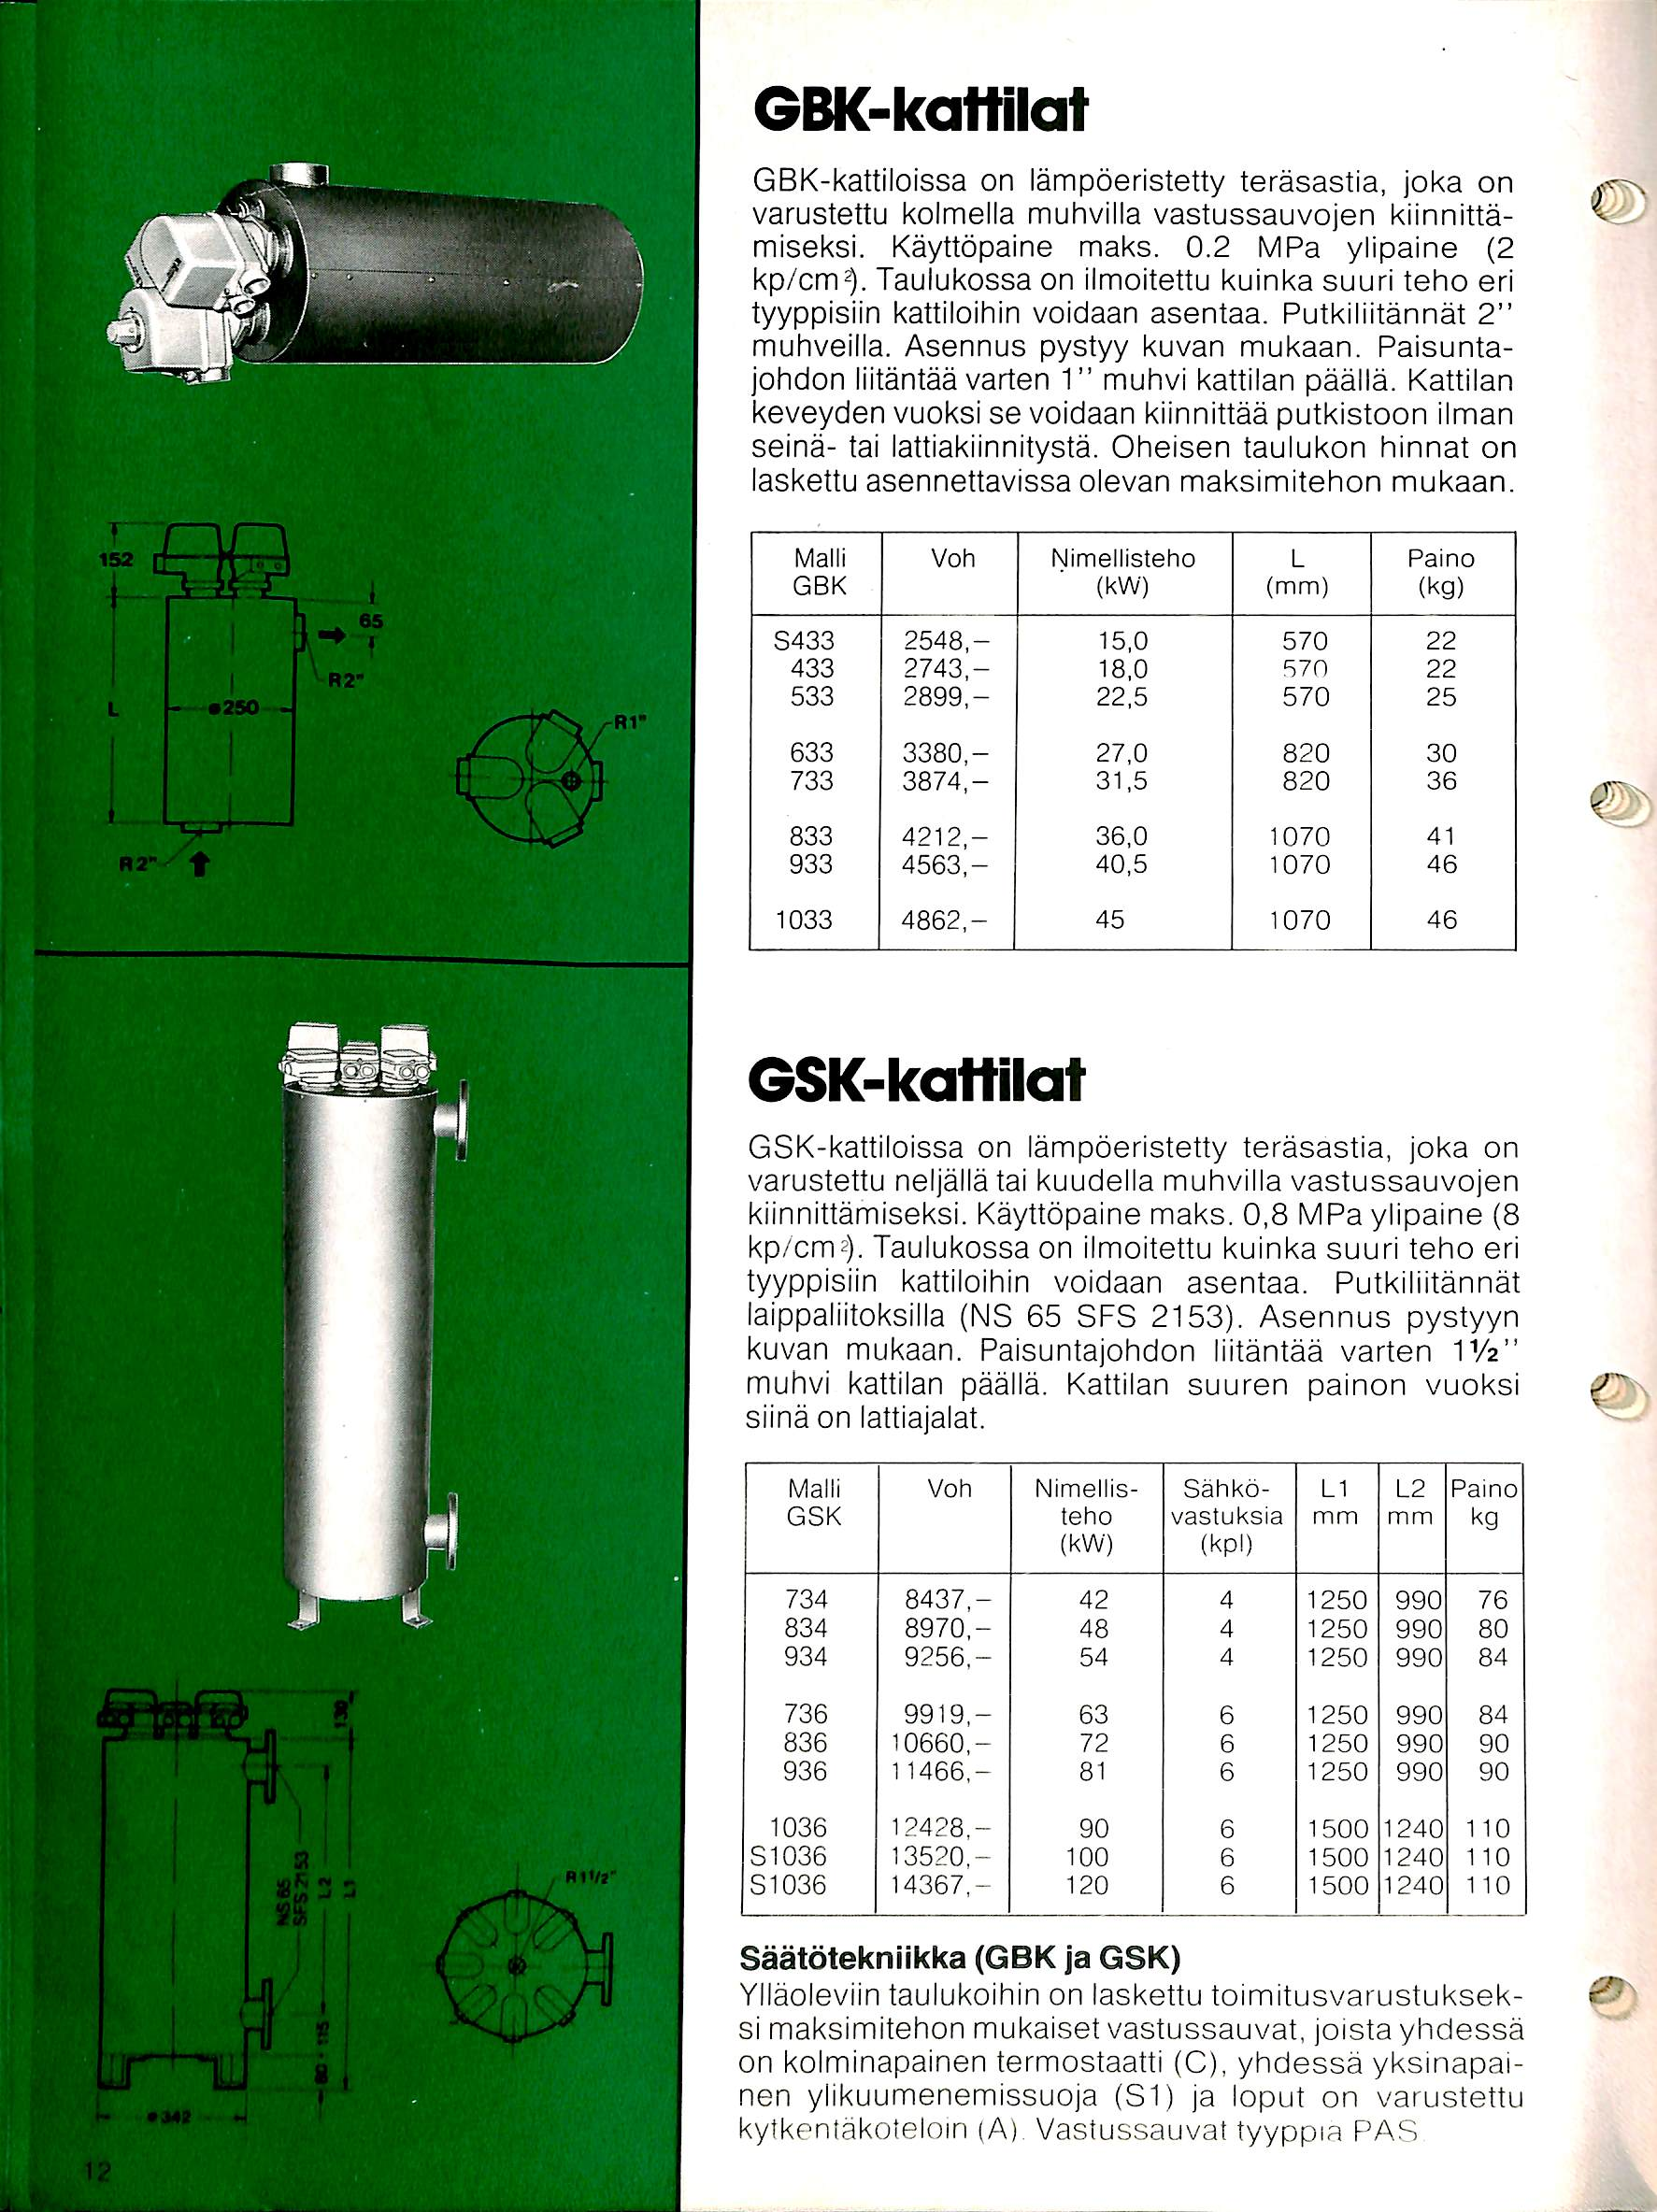 GBK-kattilat GBK-kattiloissa on lampoeristetty terasastia, joka on varustettu kolmella muhvilla vastussauvojen kiinnittamiseksi. Kayttopaine maks. 0.2 MPa ylipaine (2 kp/cm^.